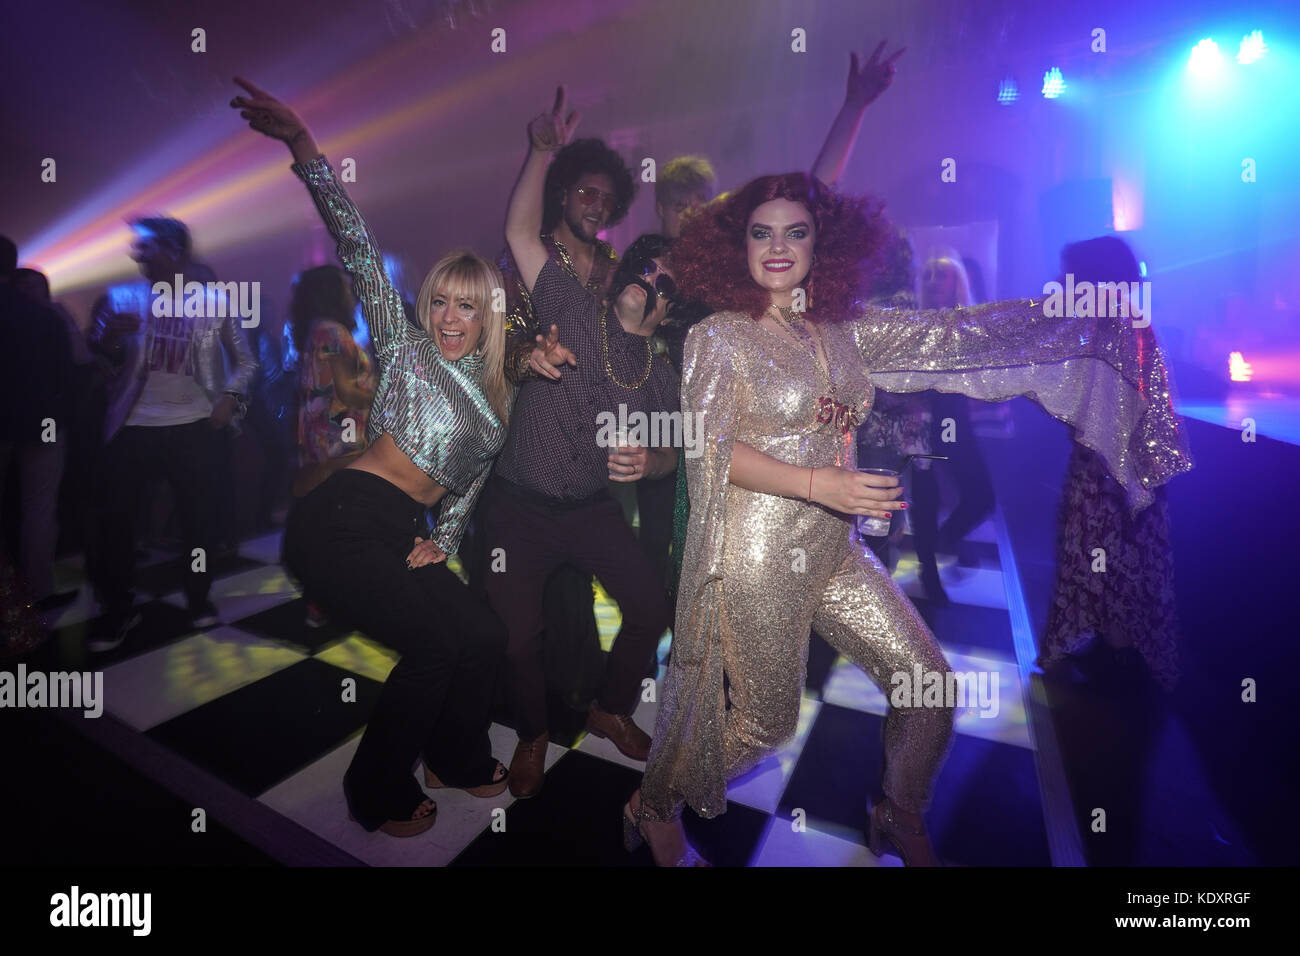 Partygänger im Glanz der Widerstand ist in der disco club Nacht verlor mit dem Haus Eden Burlesque Tänzerinnen im Bush Hall in London. foto Datum: saturd Stockfoto